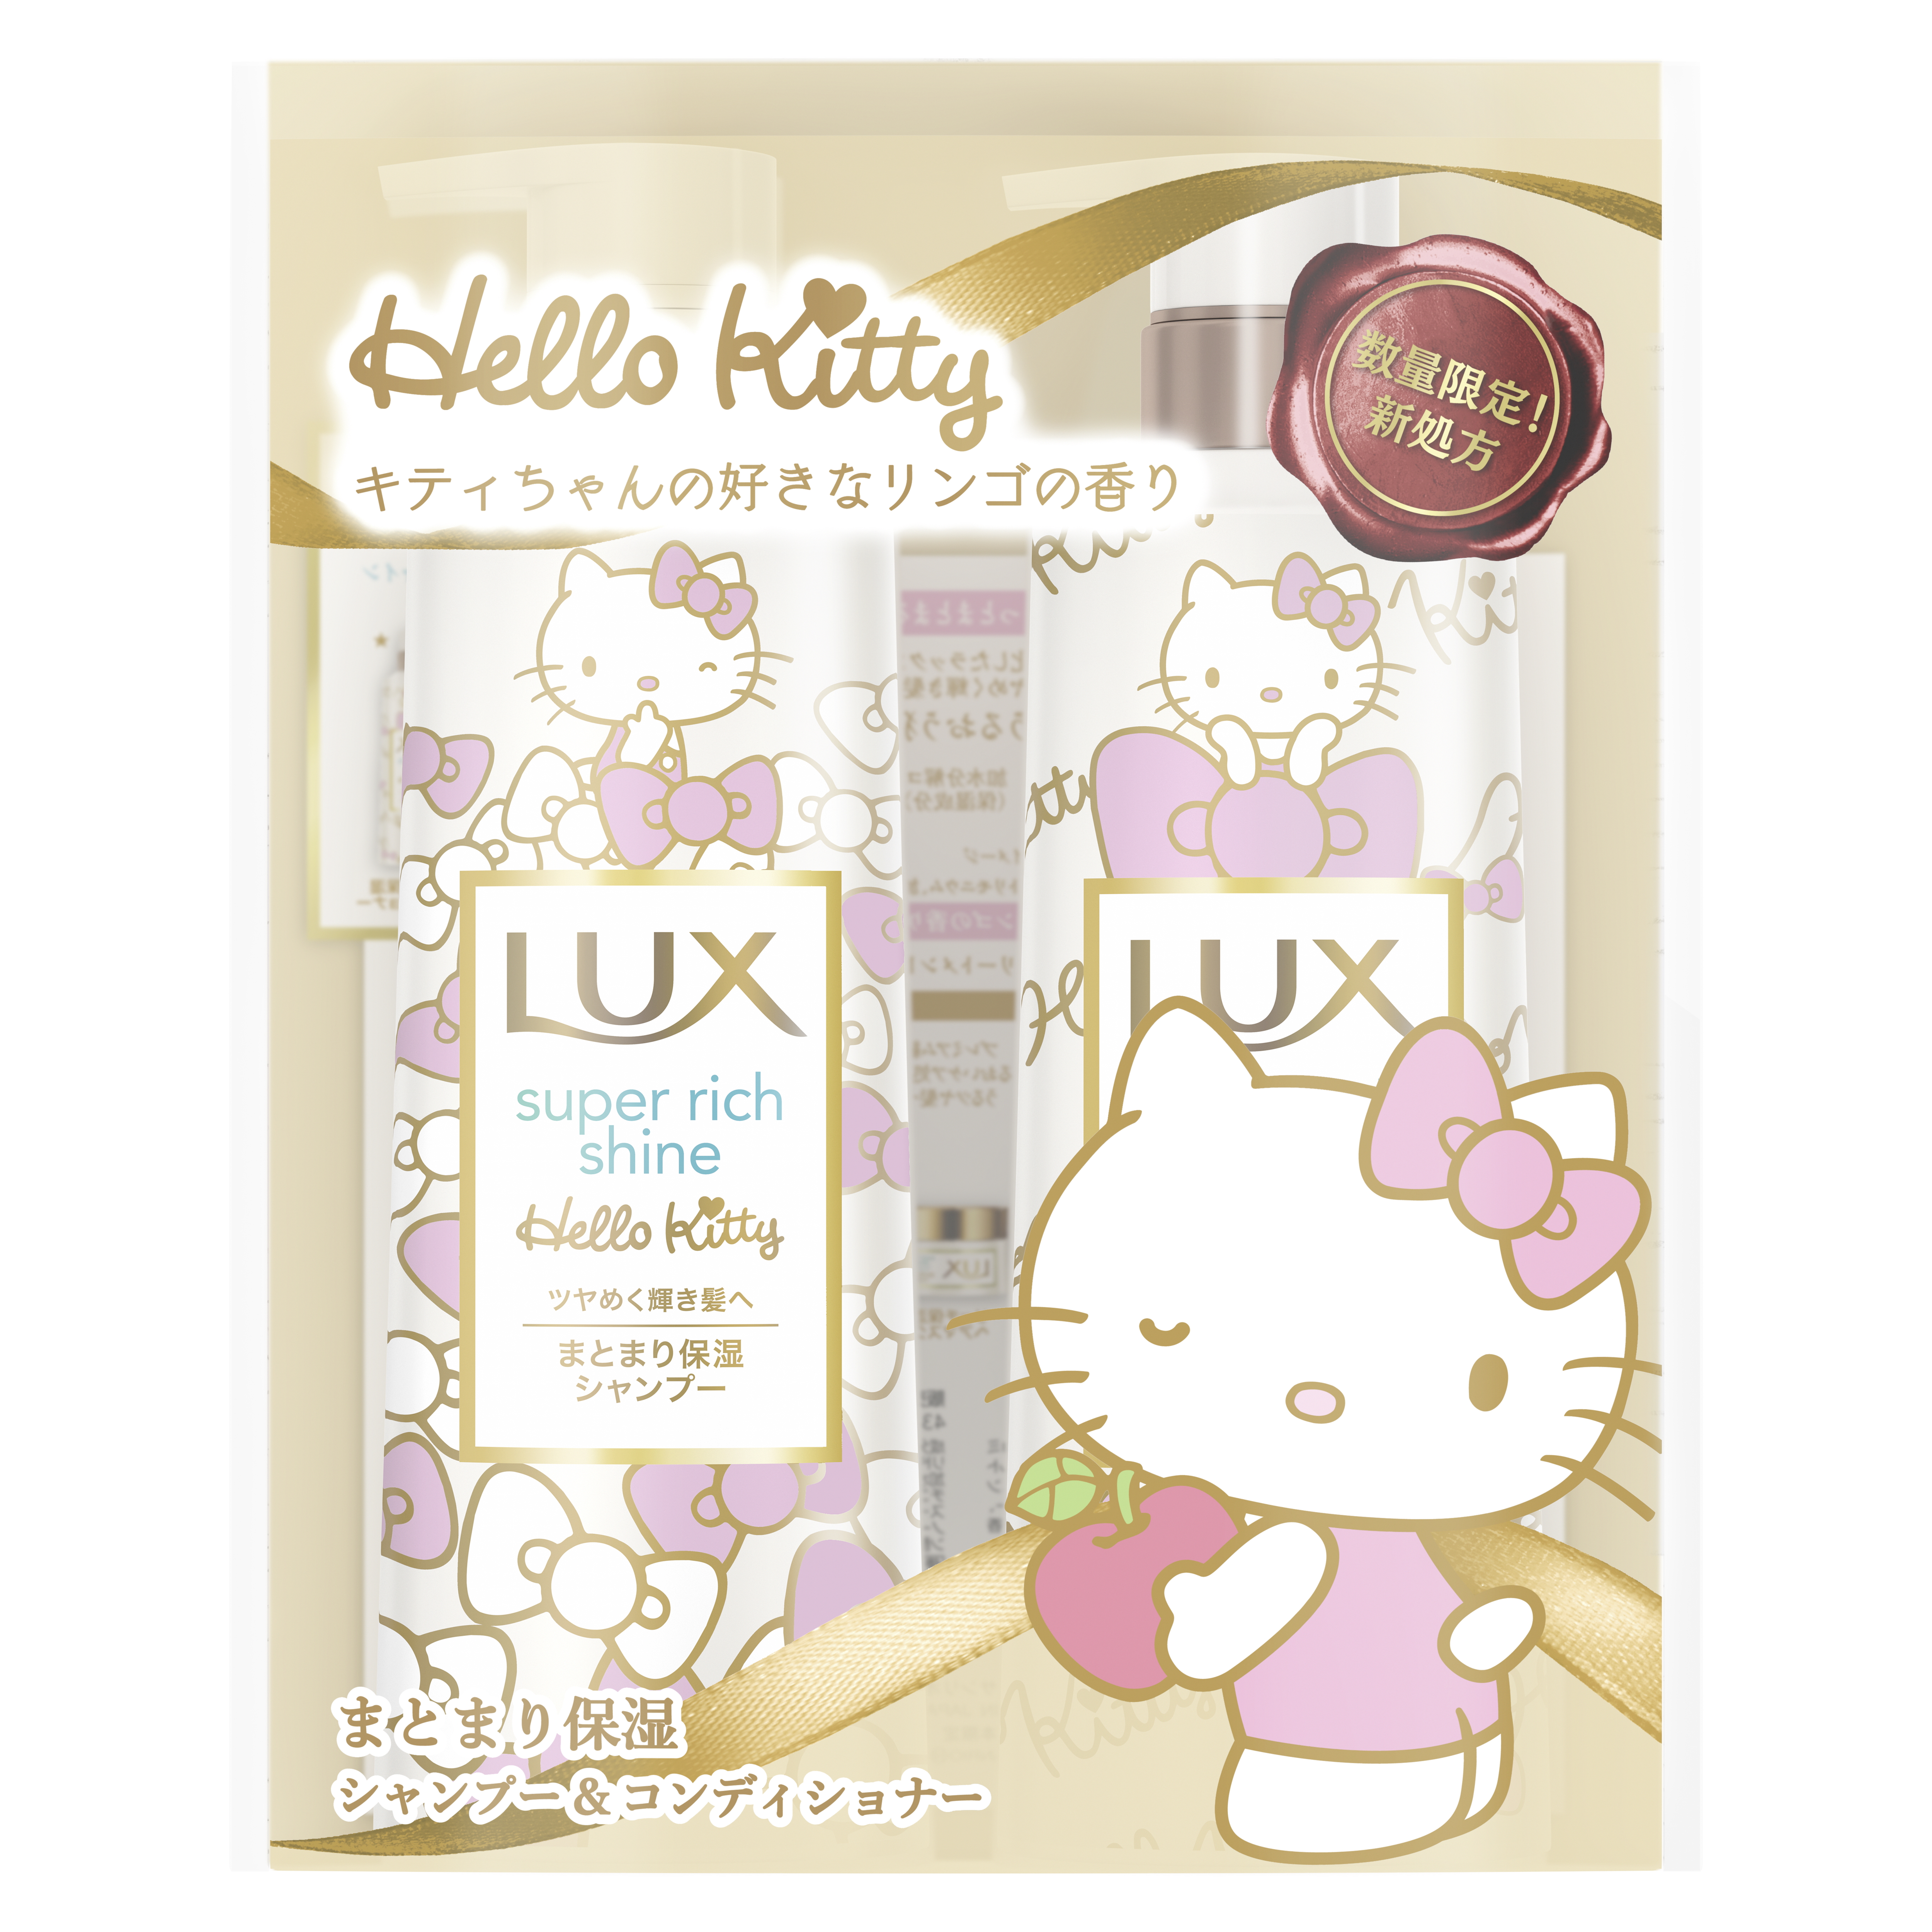 キティちゃんが好きなリンゴの香りがするシャンプー Lux サンリオ コラボ限定商品が発売決定 Game Watch